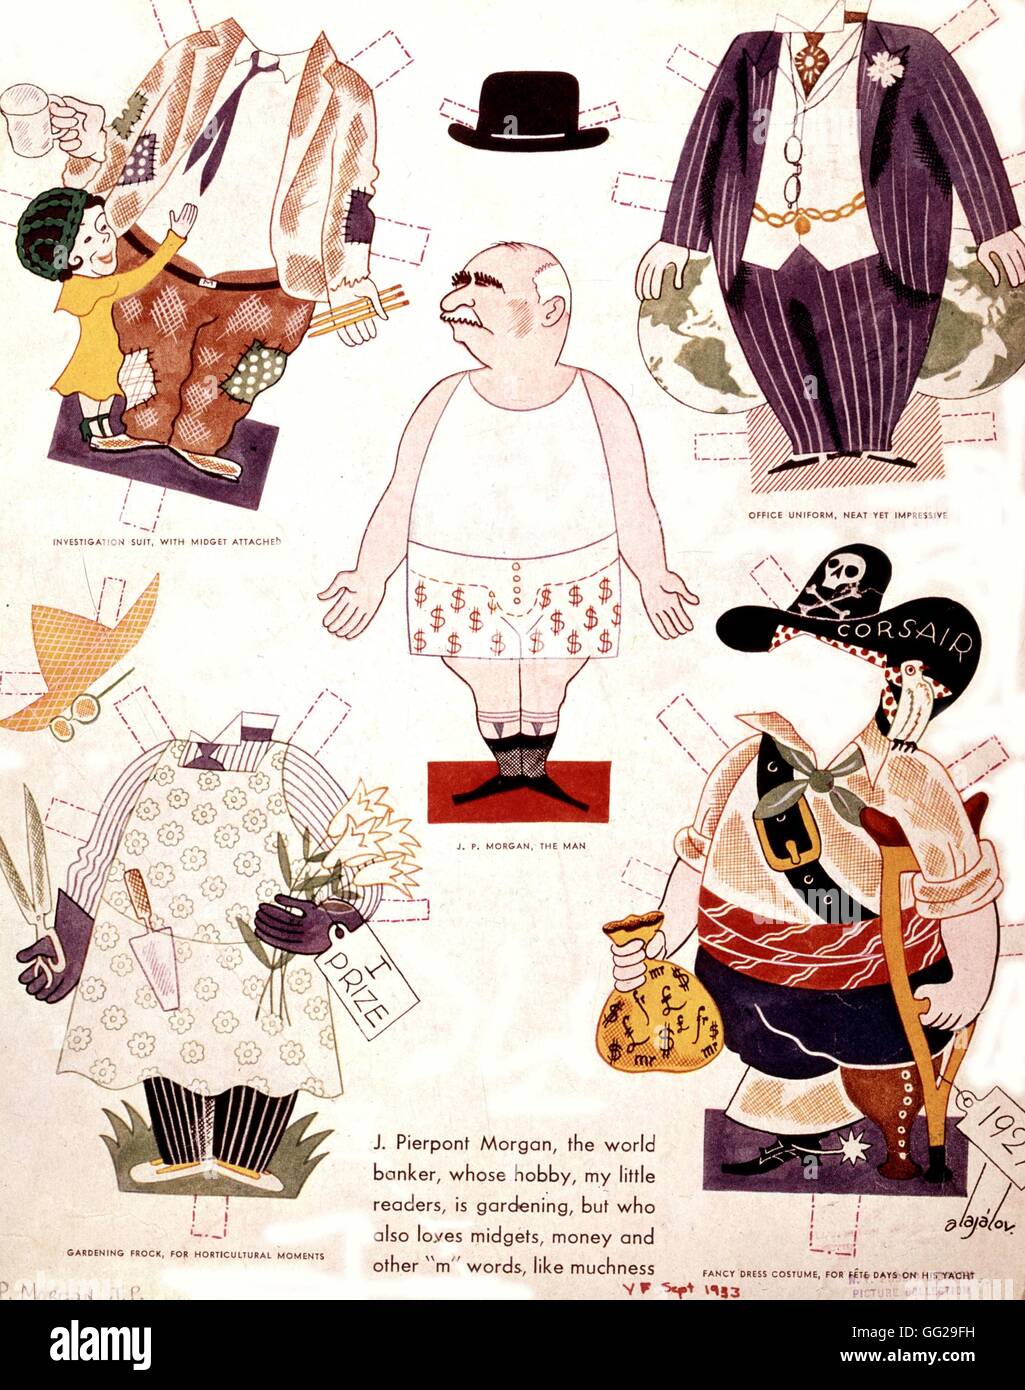 Dessin animé satirique contre le banquier John Pierpont Morgan (1867-1943) 1933 United States Washington. Bibliothèque du Congrès Banque D'Images